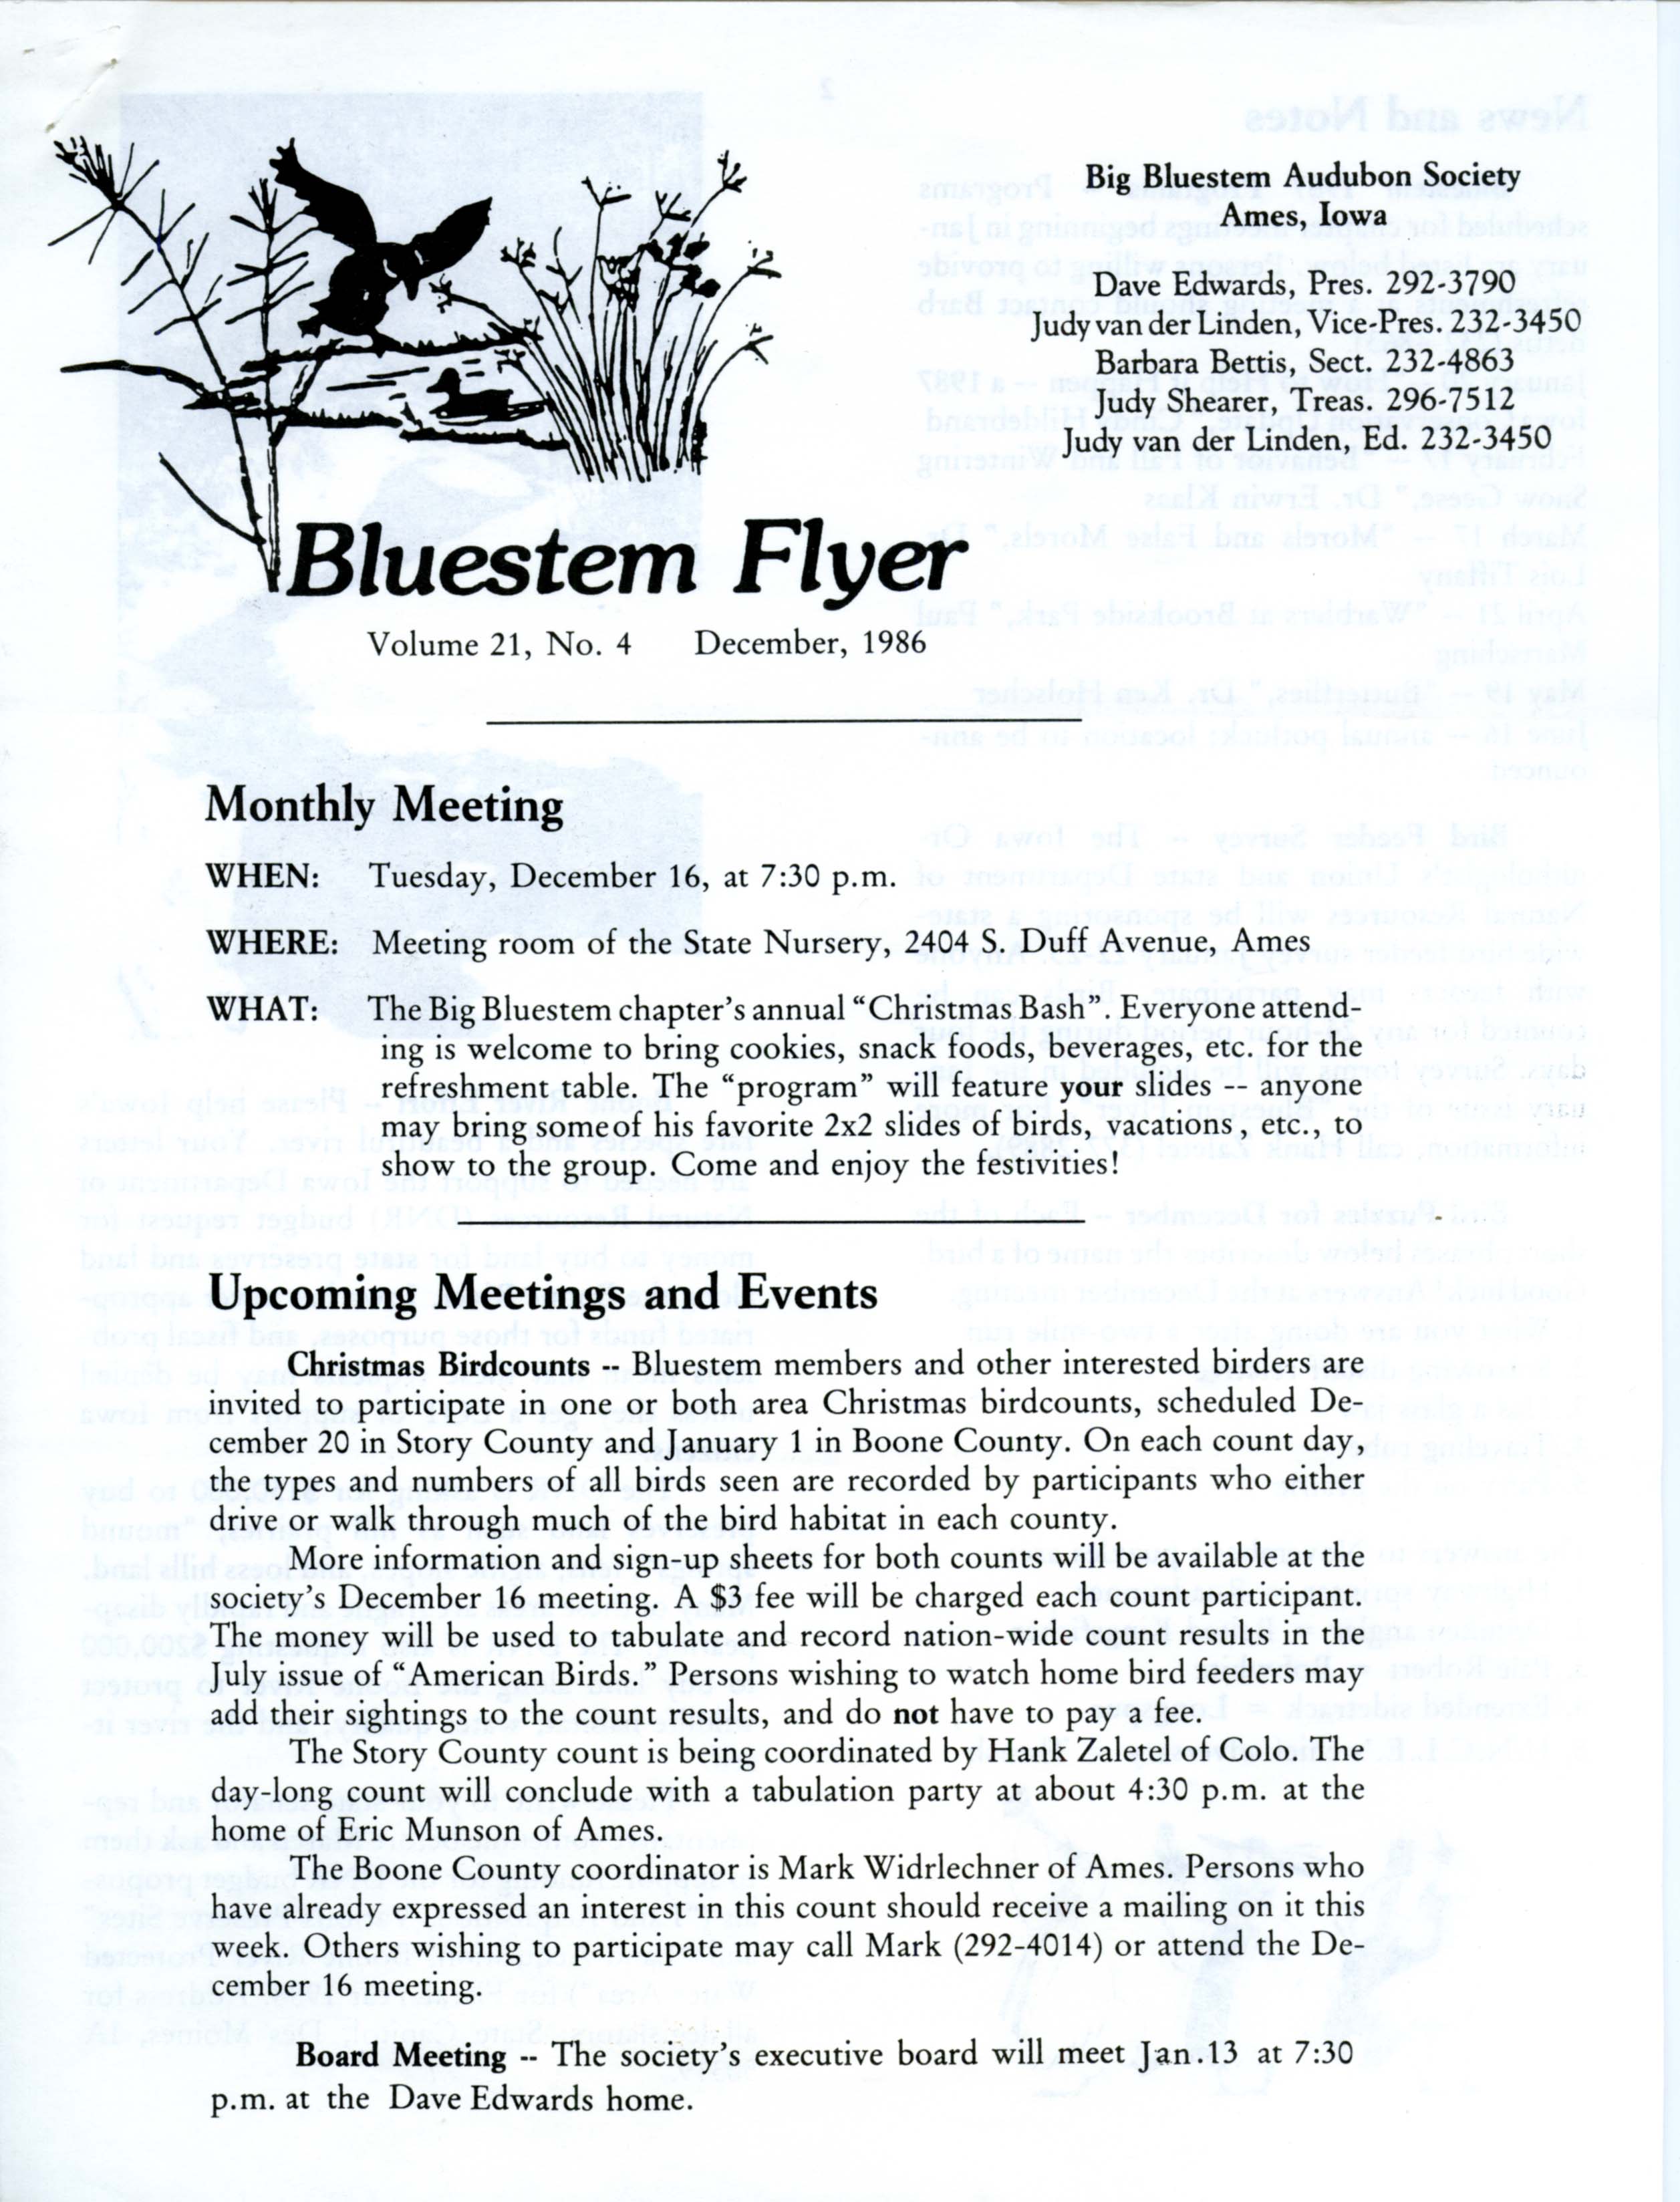 Bluestem Flyer, Volume 21, Number 4, December 1986 